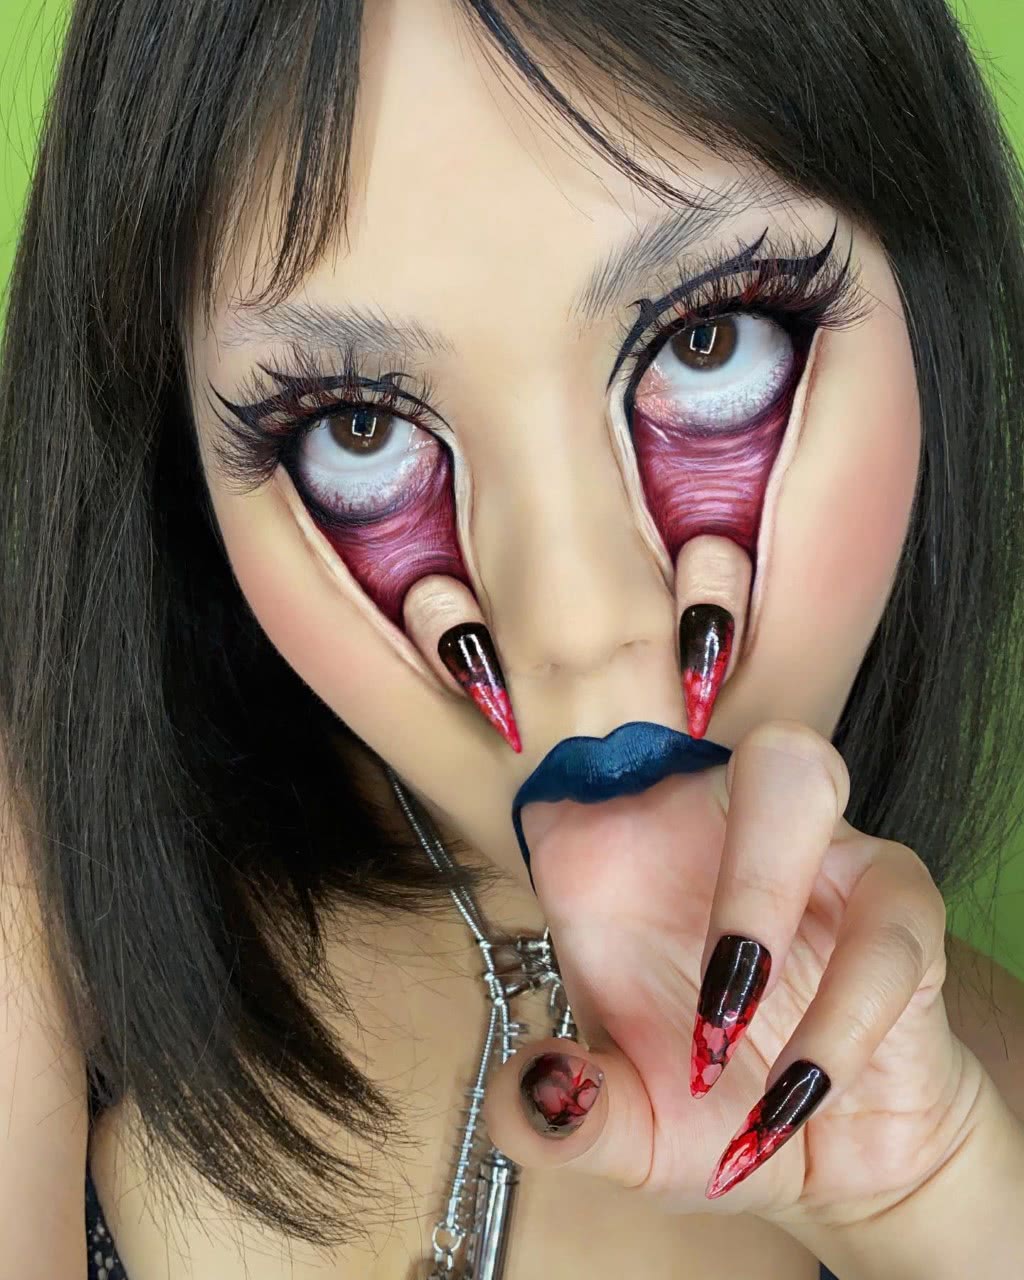 Mimi Choi arte con maquillaje 6